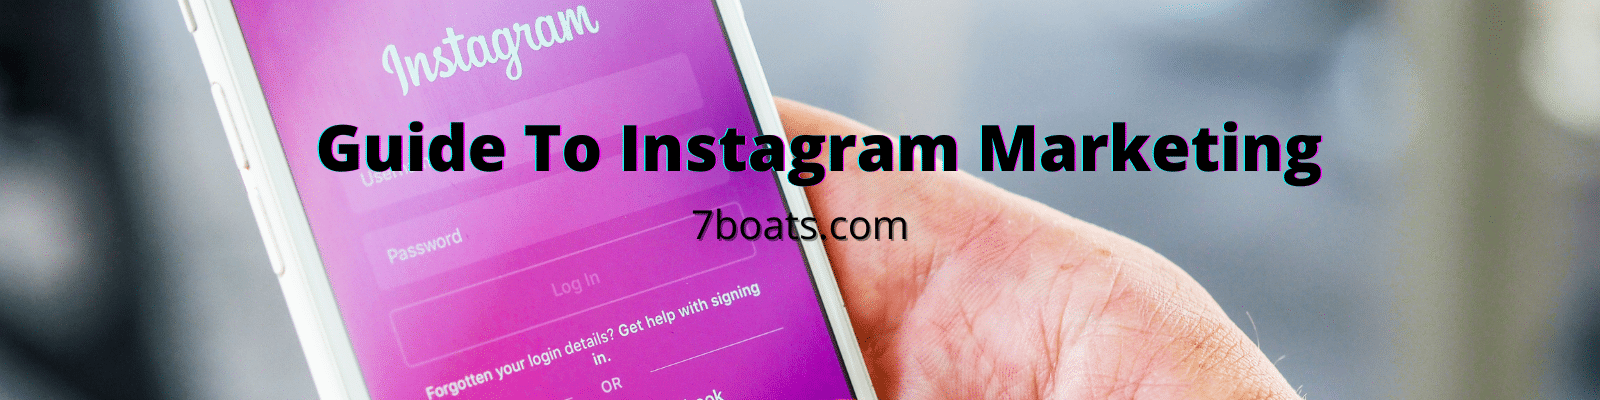 Instagram Marketing Guide: 20 Best Tips for Instagram Marketing